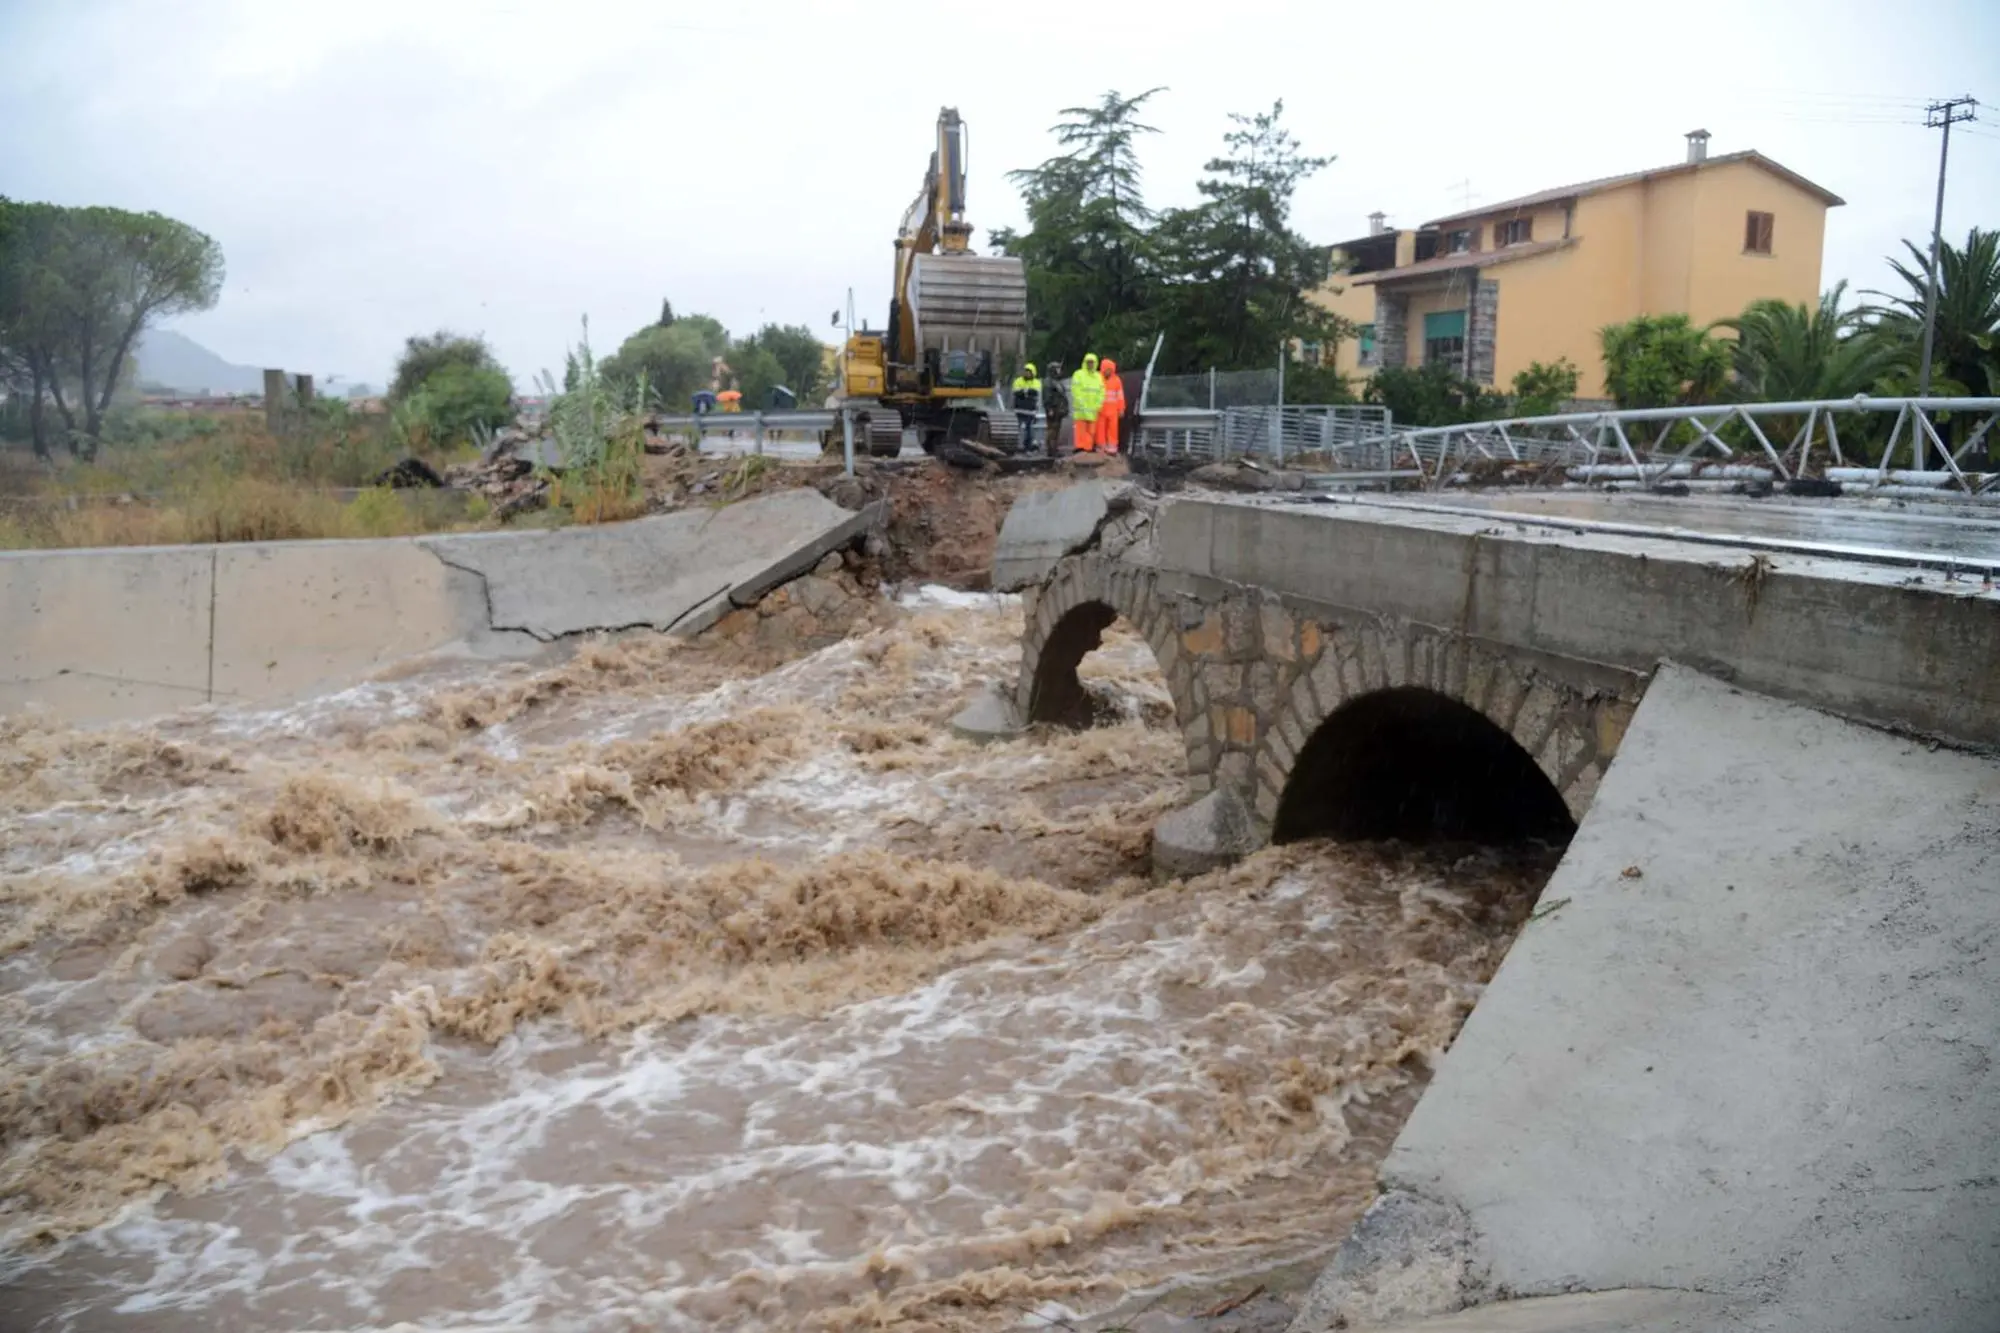 La demolizione del ponte sopra il rio Siligheddu in via Vittorio Veneto (Archivio L'Unione Sarda)